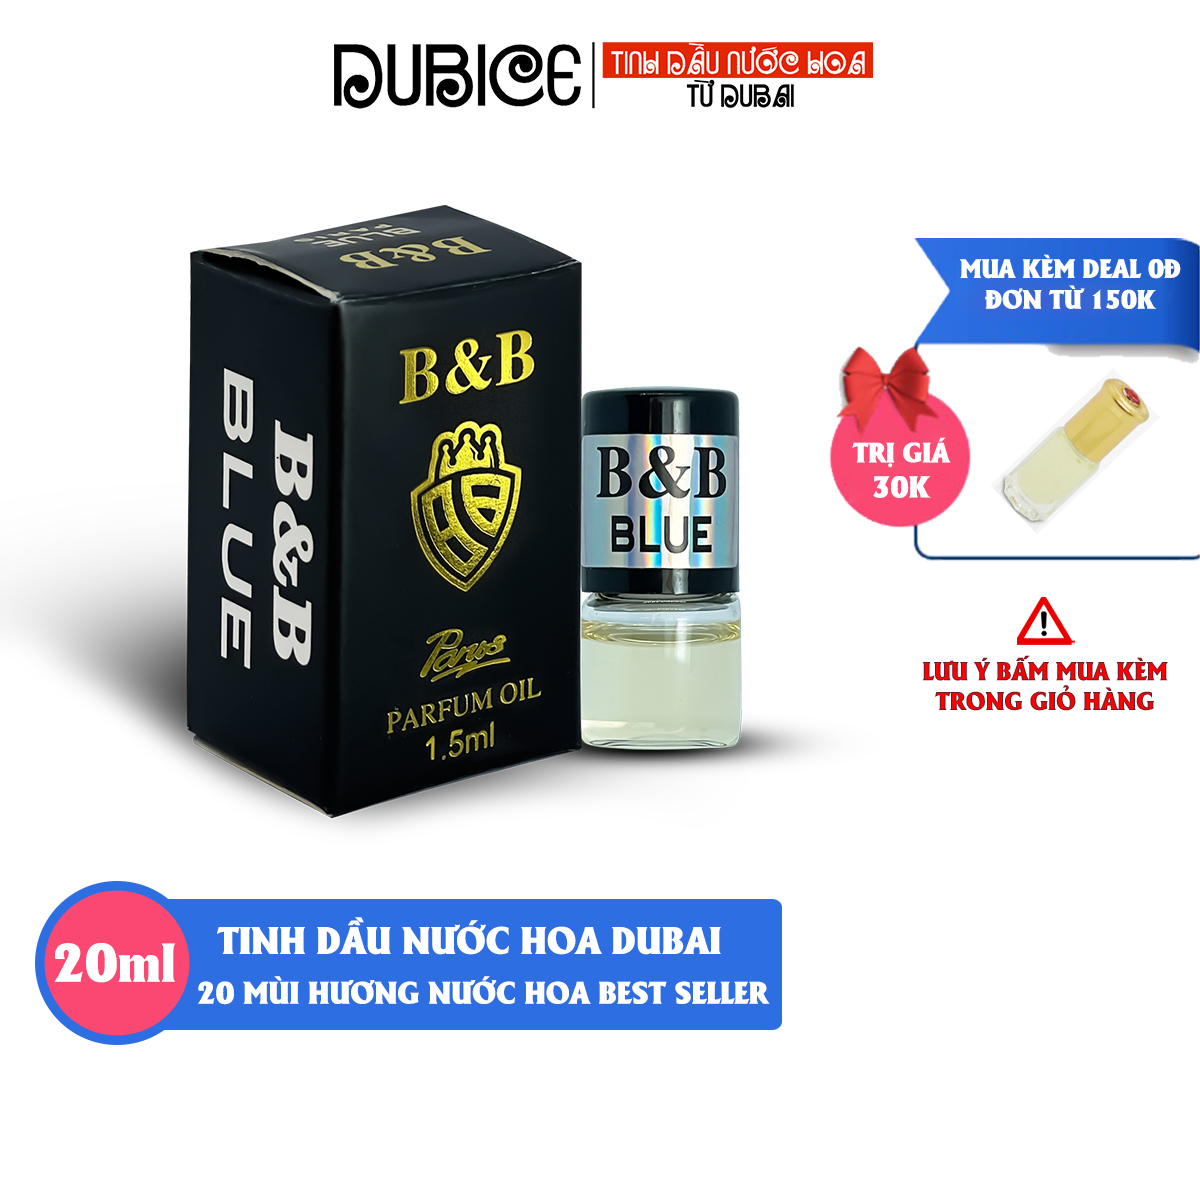 Tinh dầu nước hoa mini B&B 1.5ml mẫu test thử - dubice